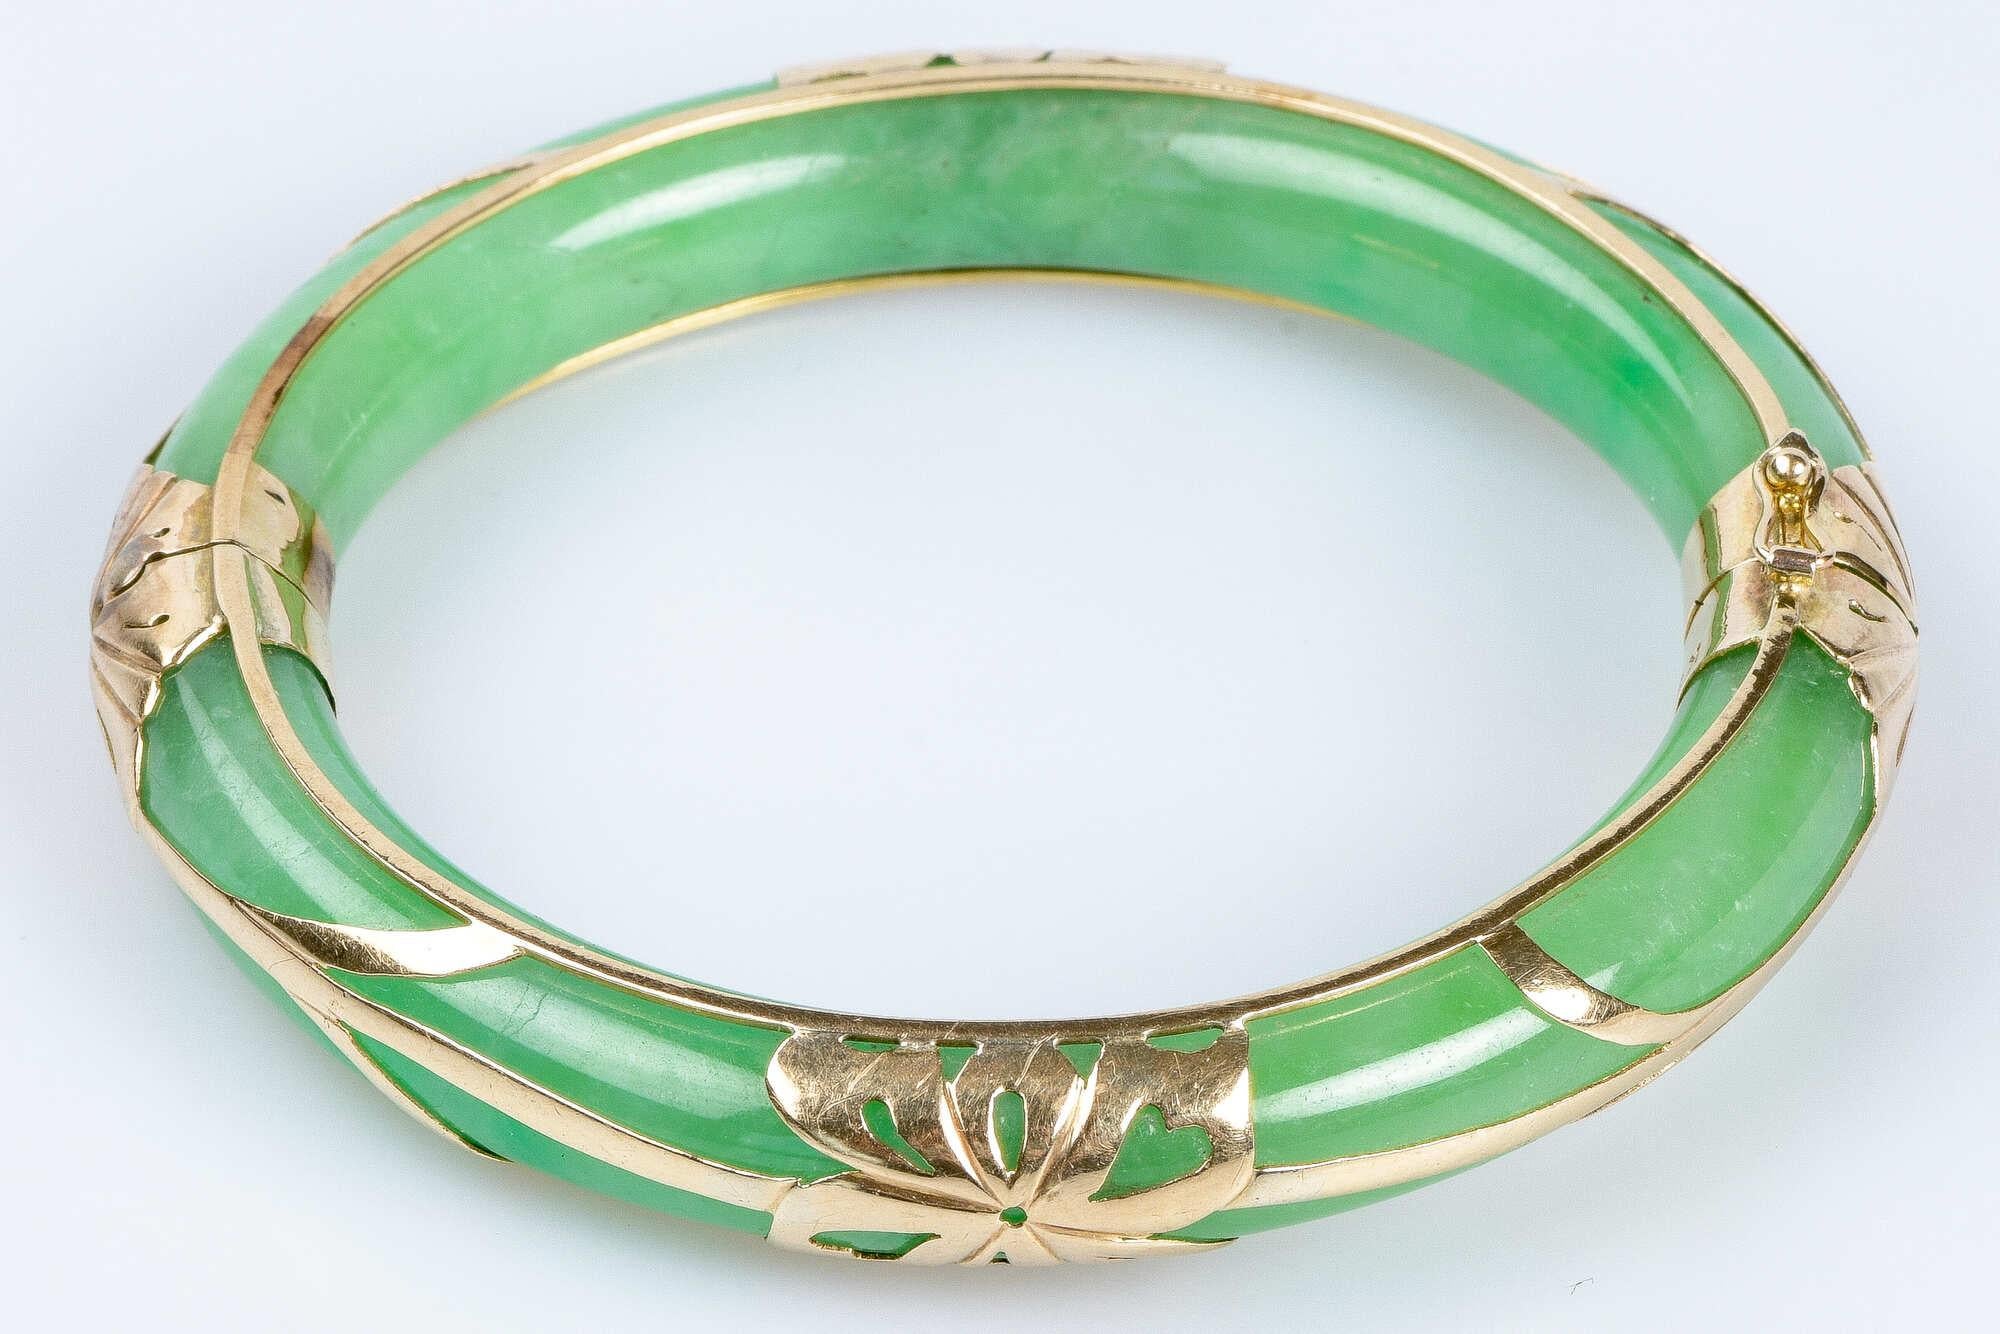 Bracelet rigide en jade avec décorations en or jaune 9 carats. Ce bracelet a une forme incurvée qui épouse le poignet et un fermoir qui permet de le mettre et de le retirer très facilement tout en assurant un maintien sûr et confortable. Le design